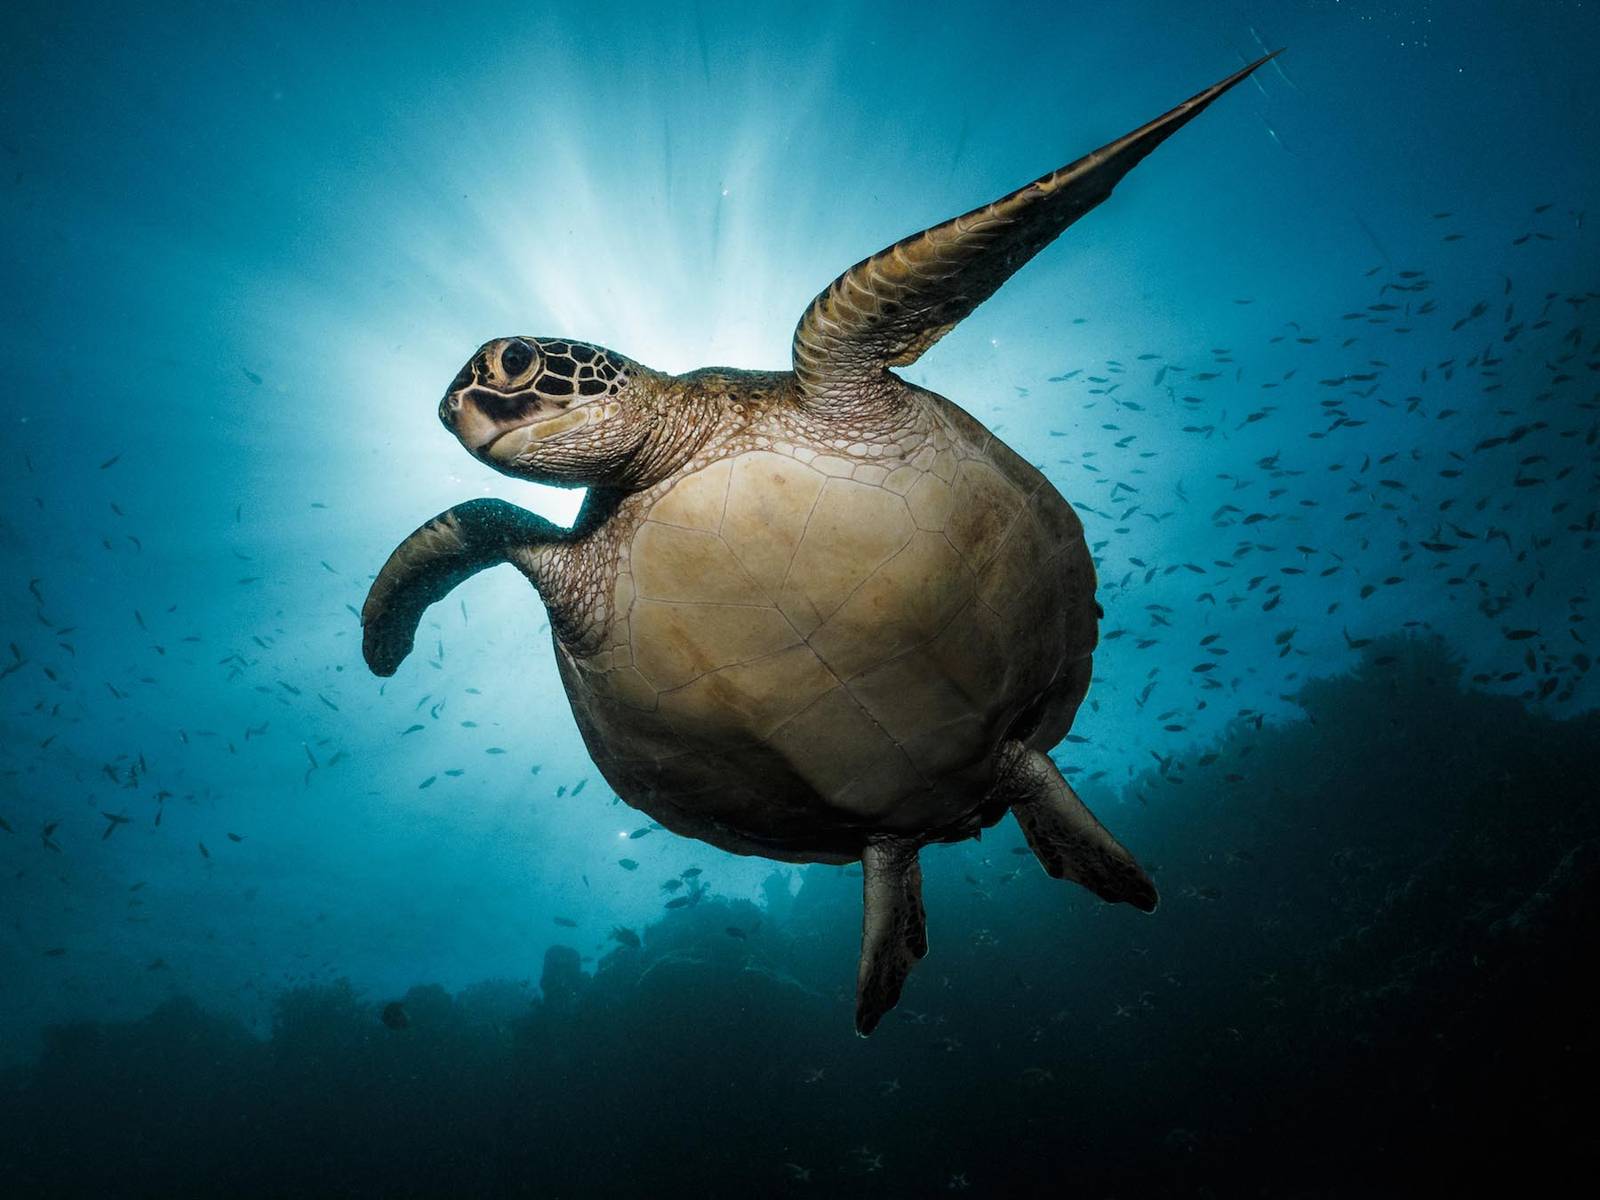 Sea Turtles as indicators of ocean health | PlasticOceans.org